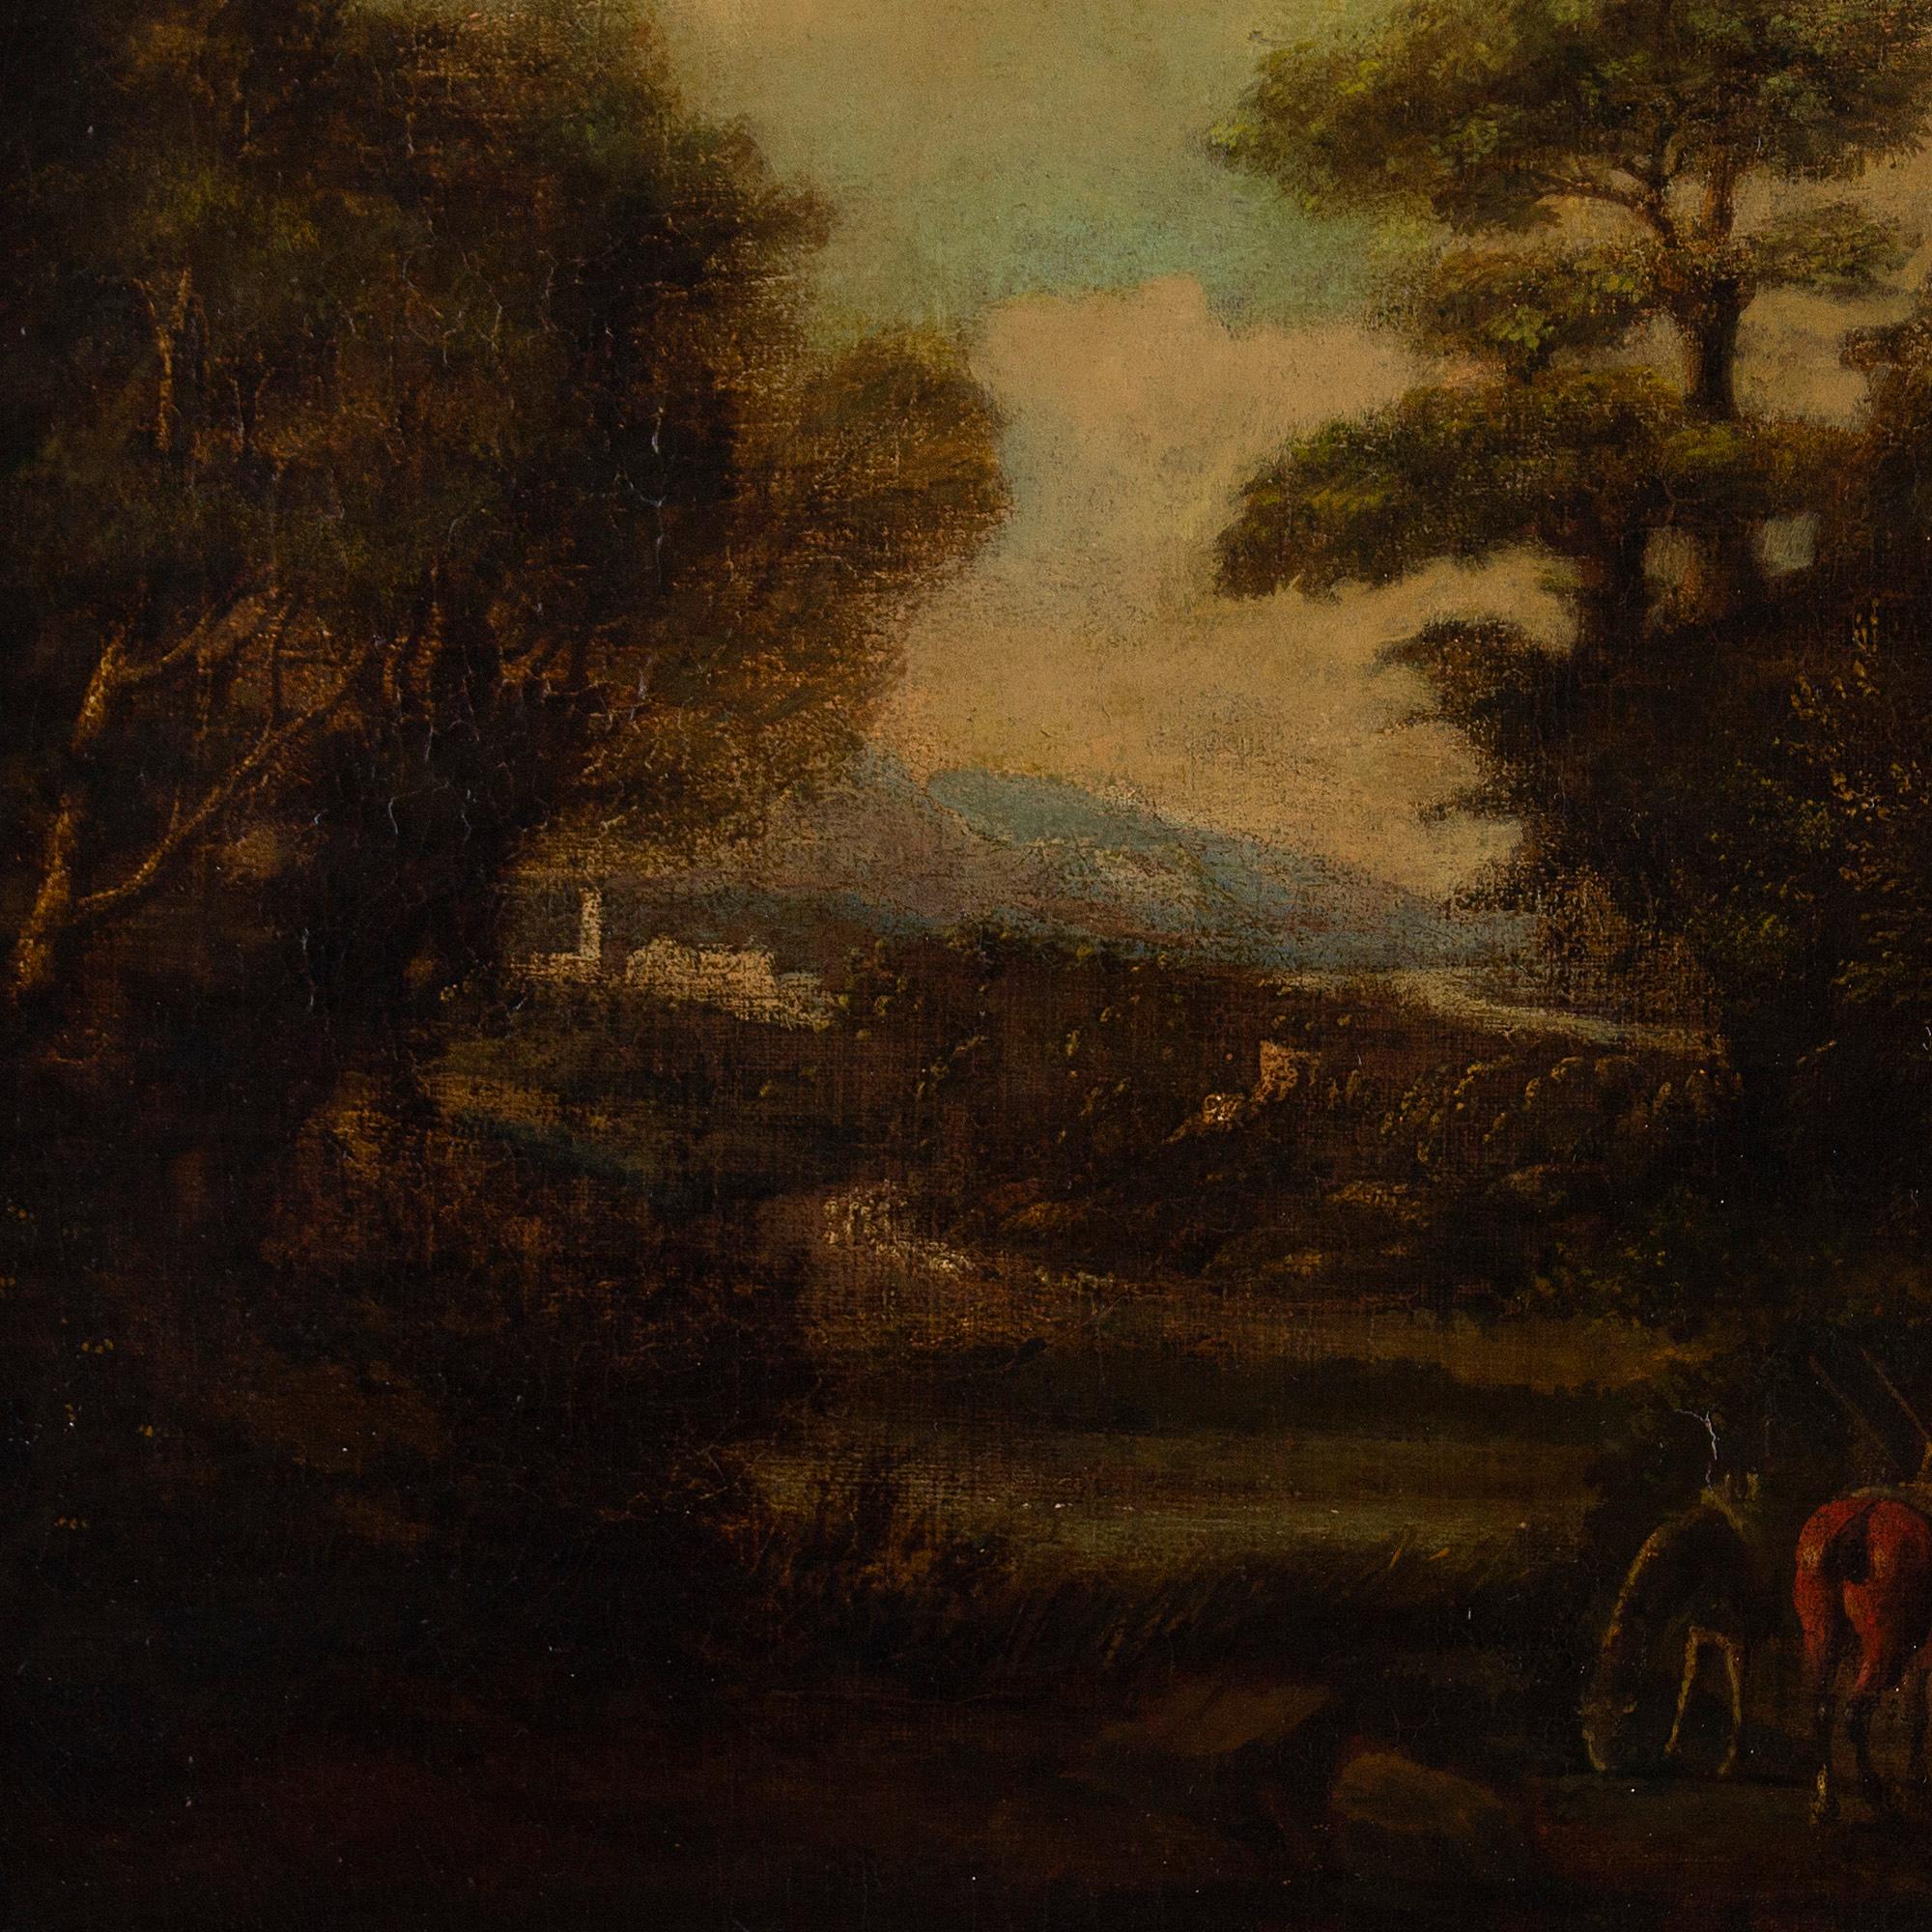 Dieses attraktive Ölgemälde aus dem frühen 18. Jahrhundert zeigt mehrere Figuren mit Pferden vor einer idealisierten ländlichen Landschaft mit einem entfernten Dorf.

Die Künstlerin hat sich von den imaginären Landschaften der französischen